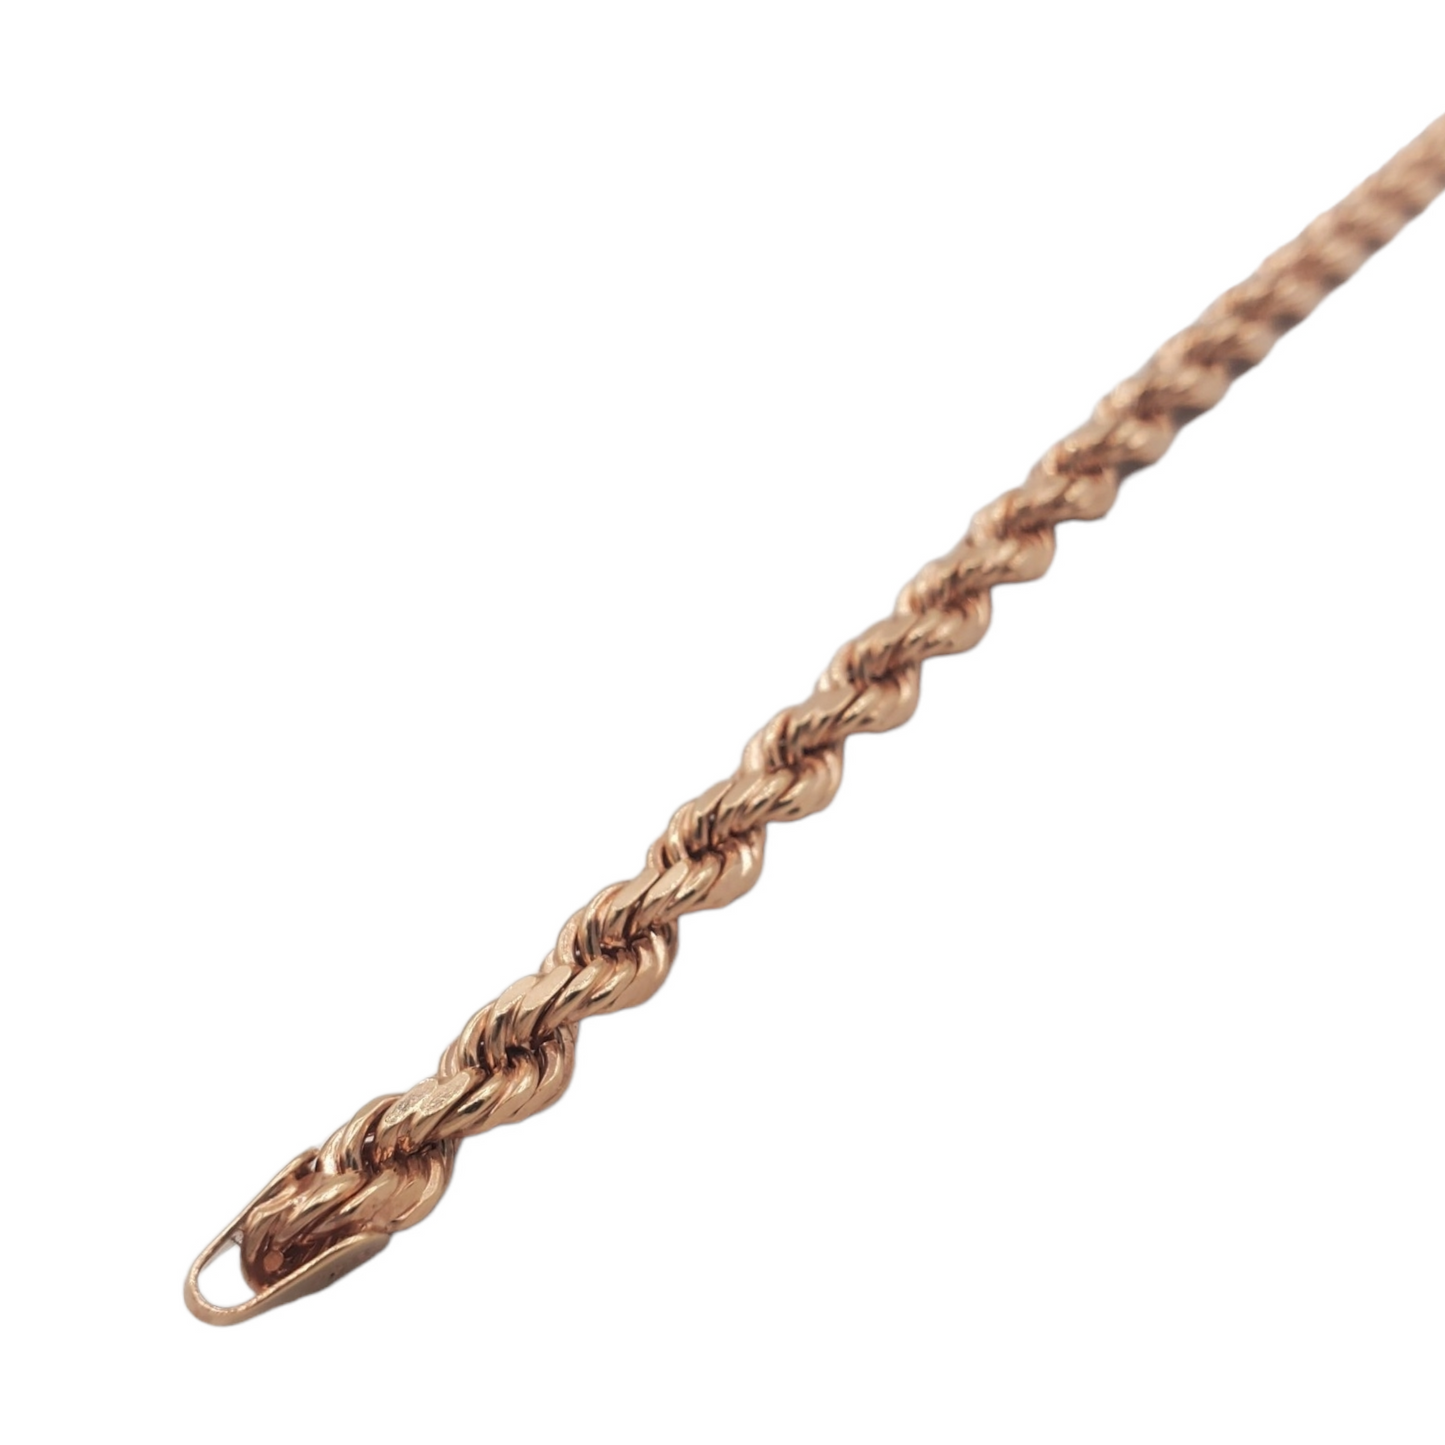 10K Rose Gold- Solid Rope Bracelet